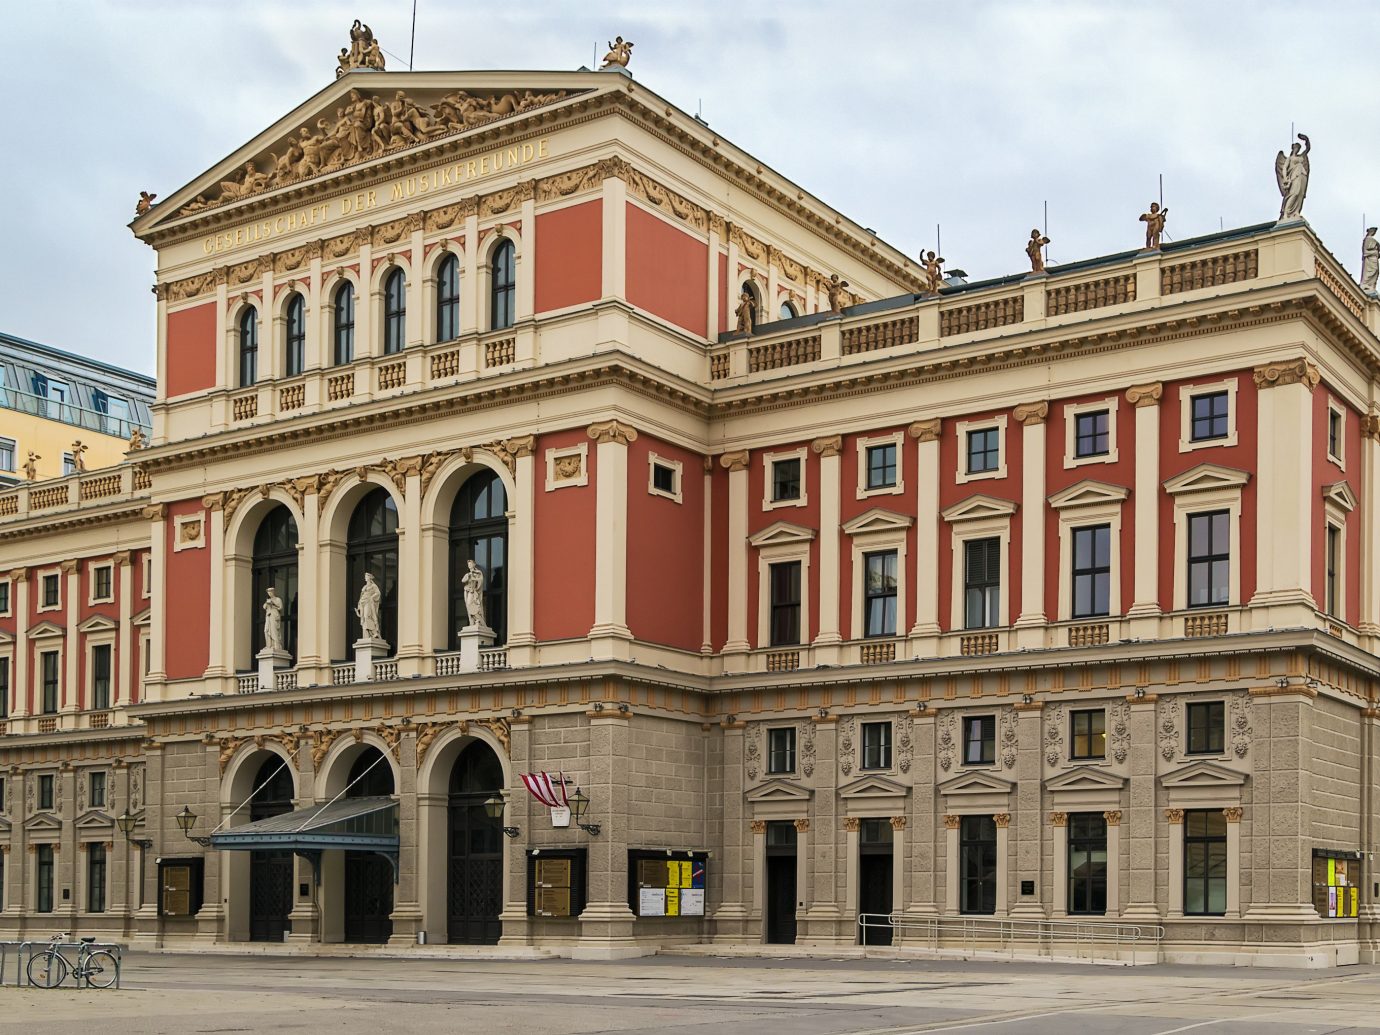 Wiener Konzerthaus in Vienna